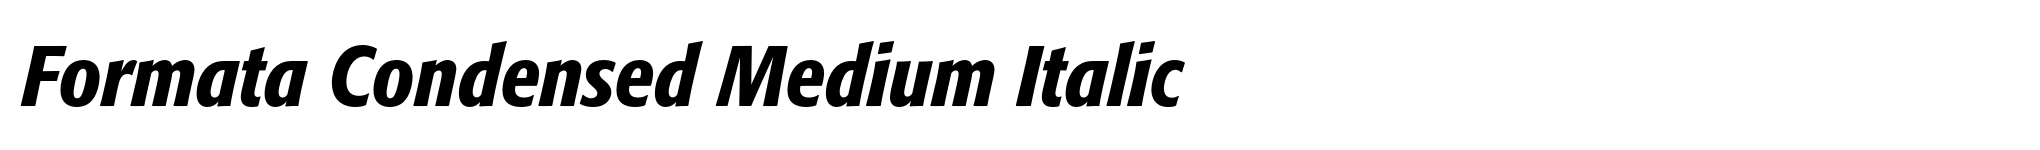 Formata Condensed Medium Italic image